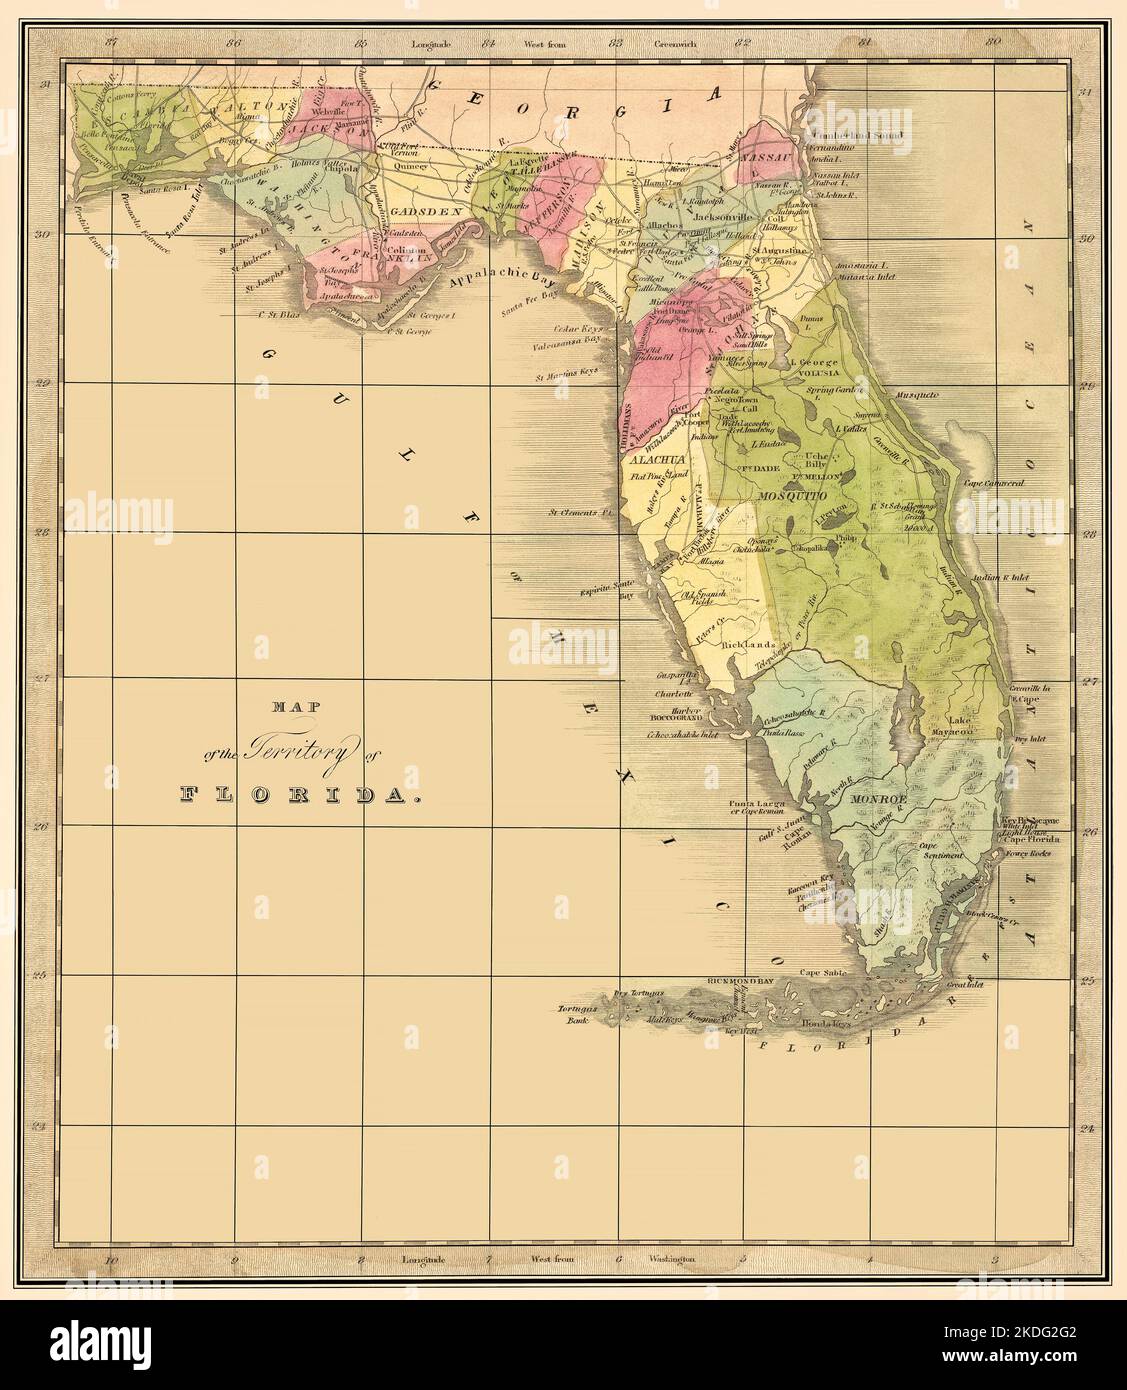 Florida Territory 1842 Karte: Dies ist eine restaurierte Reproduktion einer 1842 Karte des Territoriums von Florida.Originaltitel: 'Karte des Territoriums von Florida'. Es zeigt viele wichtige Ortsnamen. Florida wurde am 3. März 1845 zum 27. Staat. Zeigt die zum Zeitpunkt der Veröffentlichung vorhandenen Bezirke an. Stockfoto